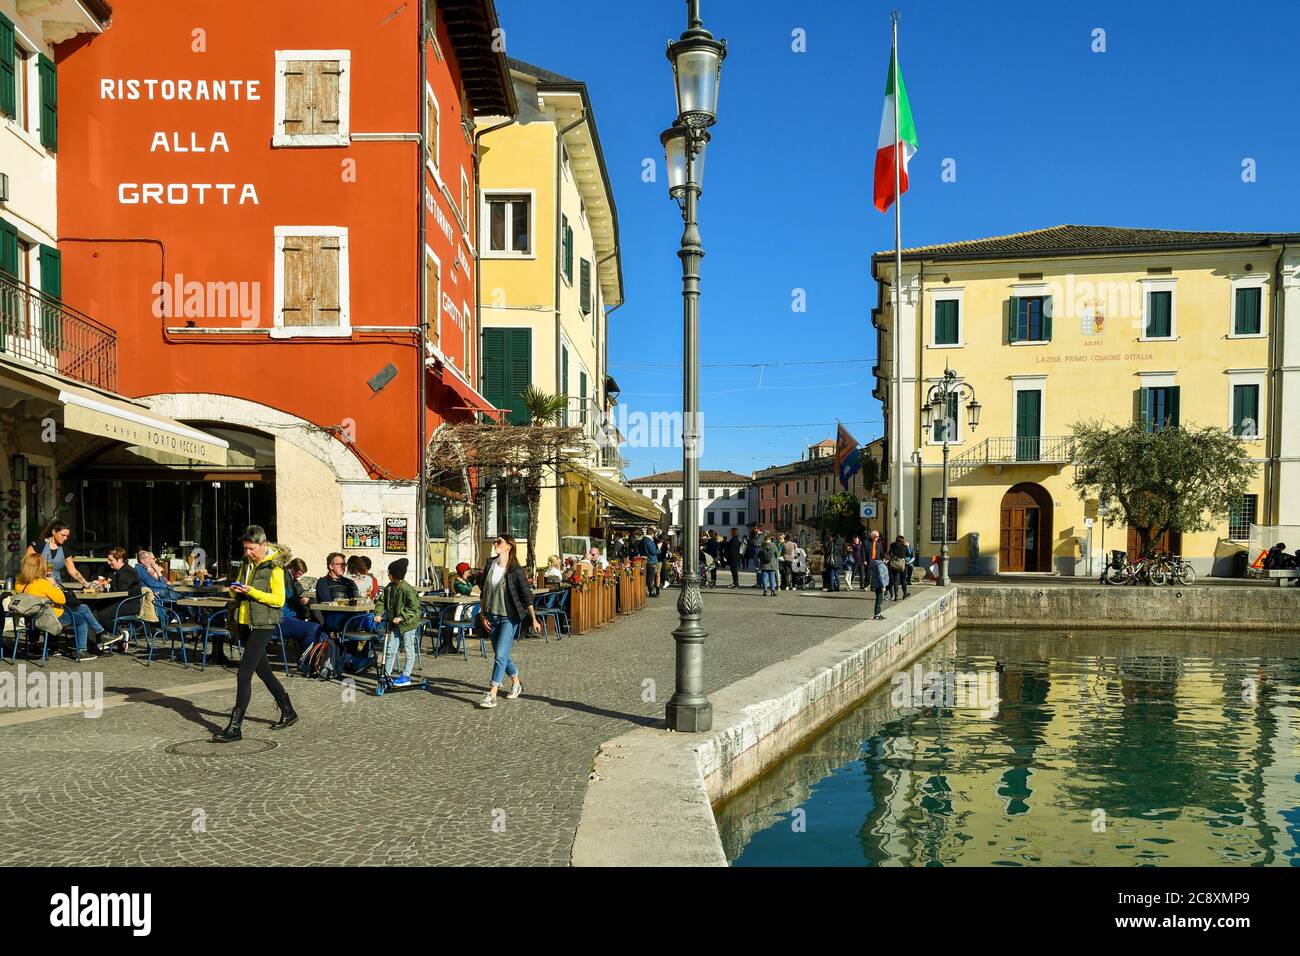 Vue sur la vieille ville sur la rive du lac de Garde avec des personnes marchant et assis dans des restaurants en plein air et l'hôtel de ville, Lazise, Veneto, Italie Banque D'Images